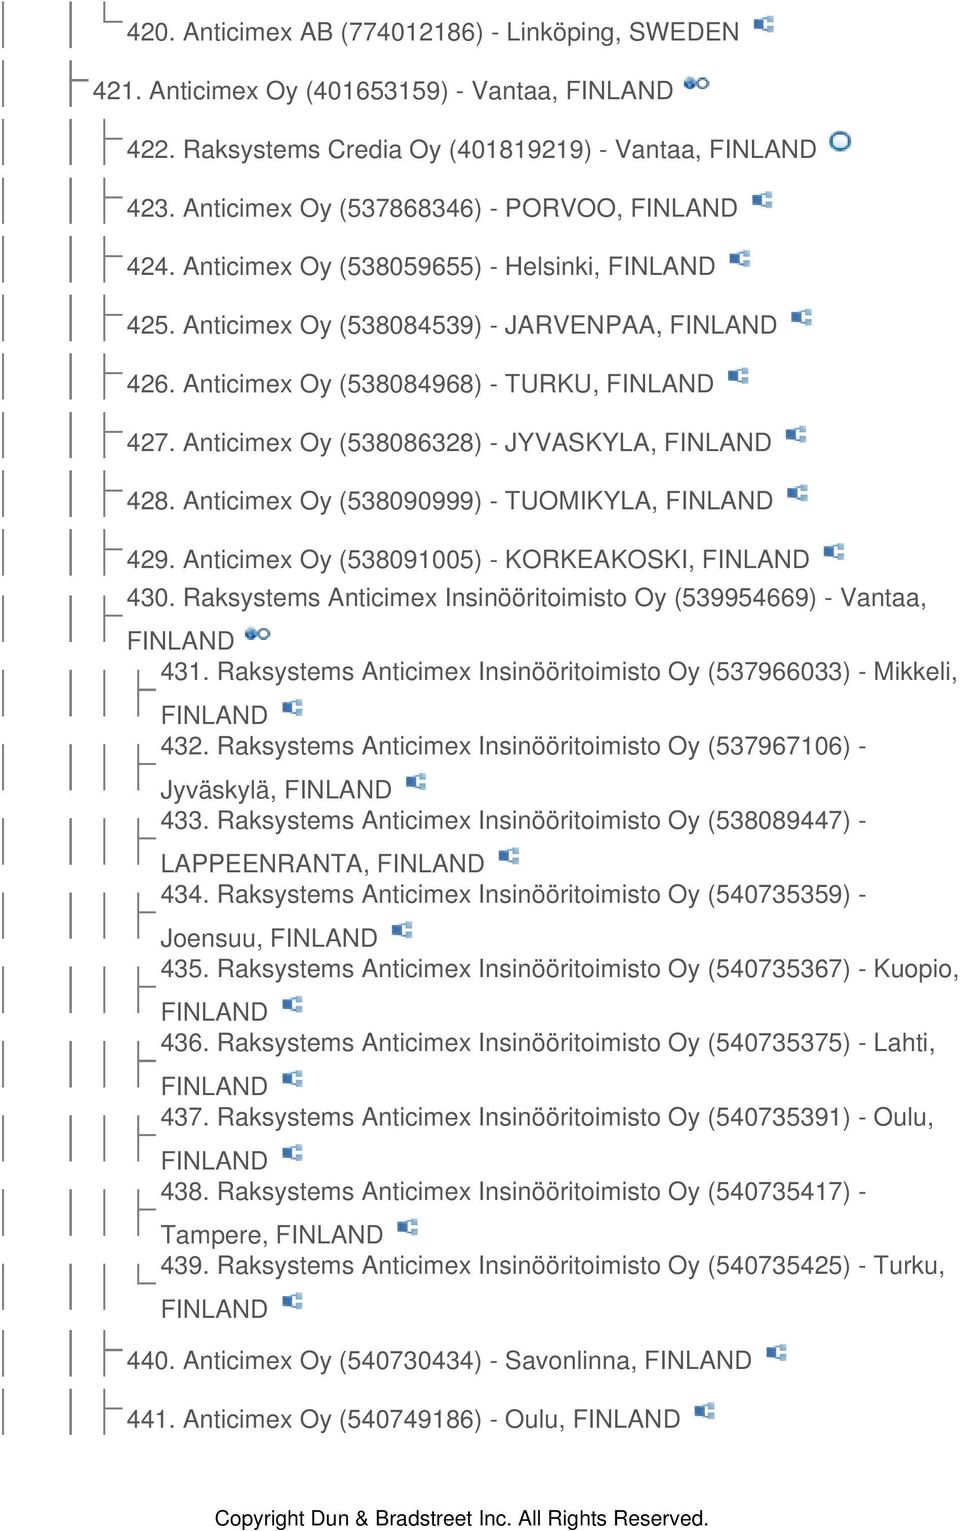 Anticimex Oy (538090999) - TUOMIKYLA, FINLAND 429. Anticimex Oy (538091005) - KORKEAKOSKI, FINLAND 430. Raksystems Anticimex Insinööritoimisto Oy (539954669) - Vantaa, FINLAND 431.